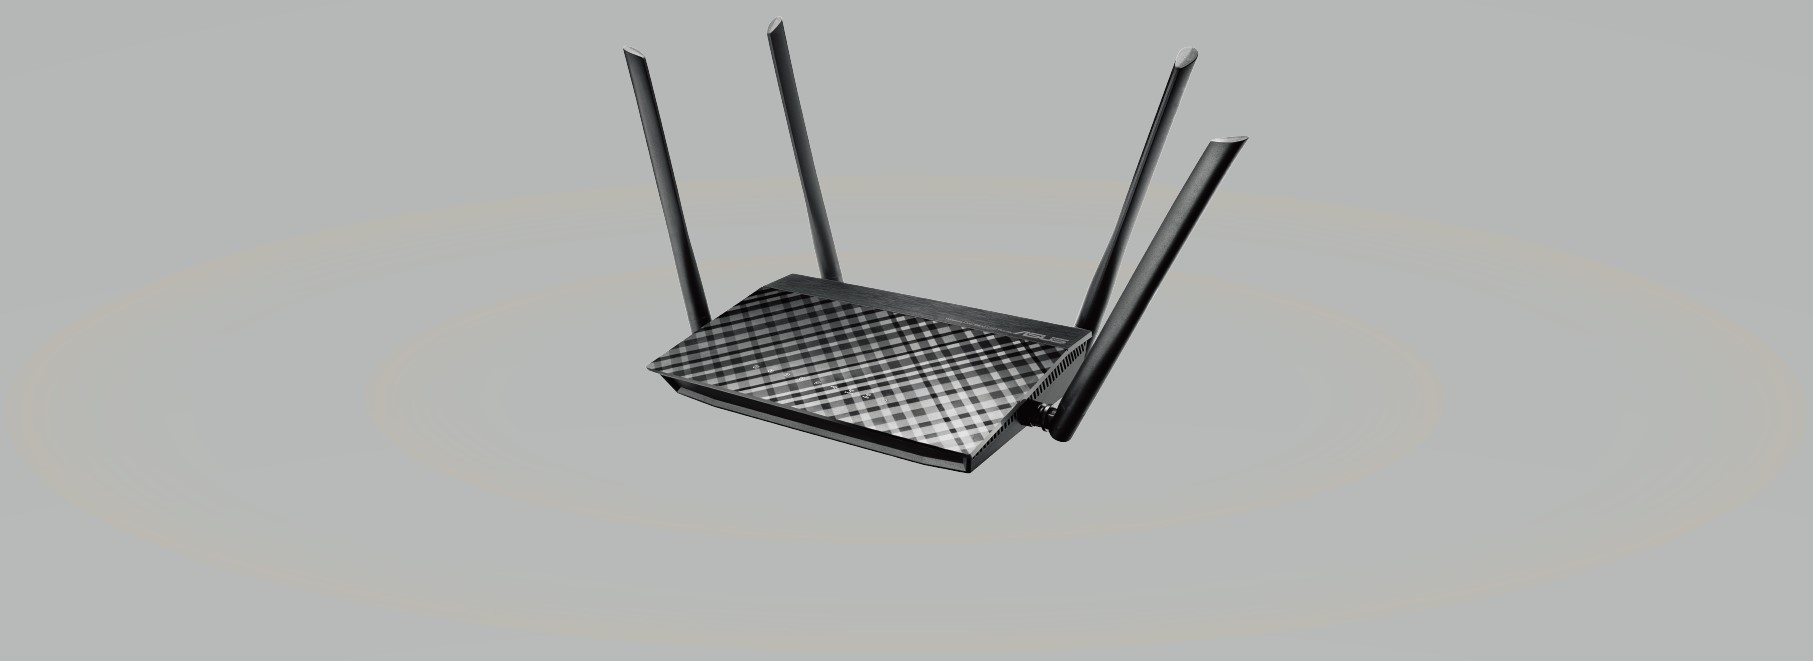 Asus RT-AC59U – Recensione del router wireless per AiMesh